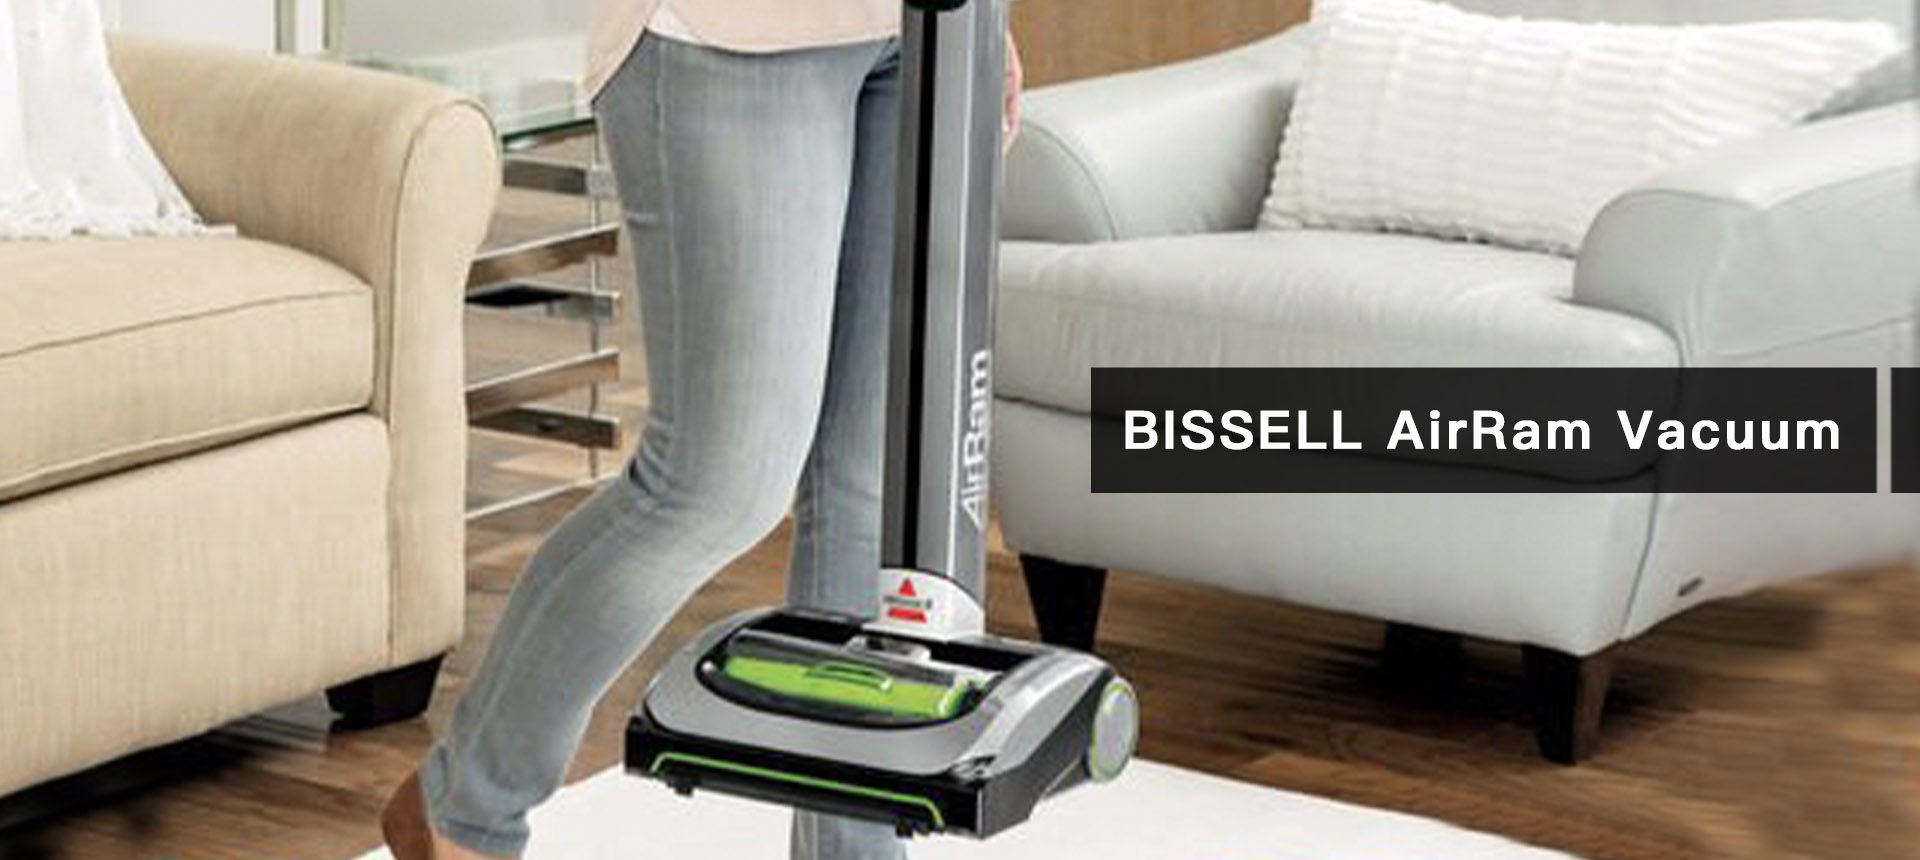 BISSELL AirRam Vacuum